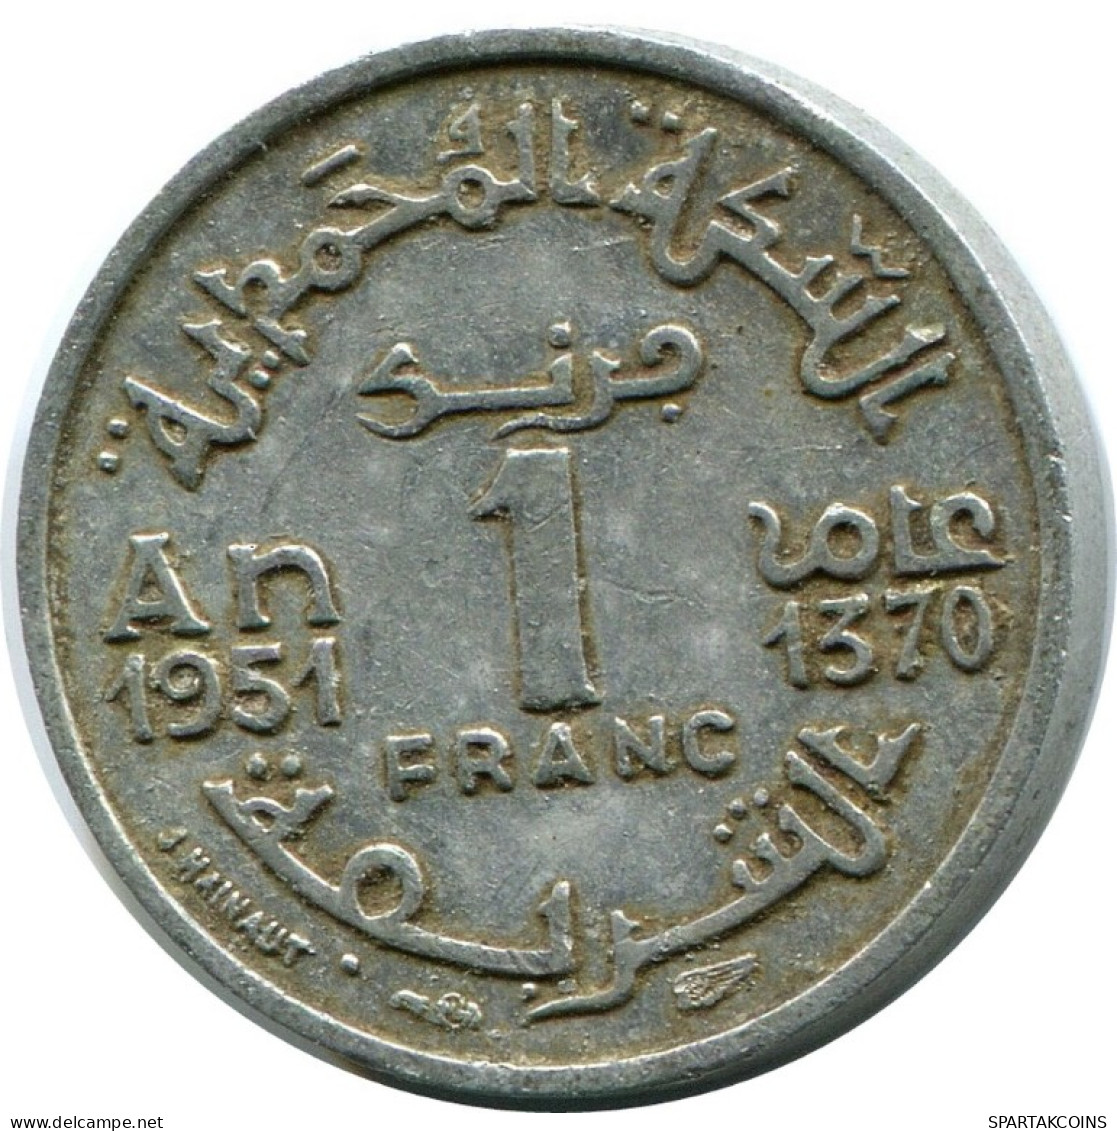 1 FRANC 1951 MOROCCO Islamic Coin #AH691.3.U.A - Maroc